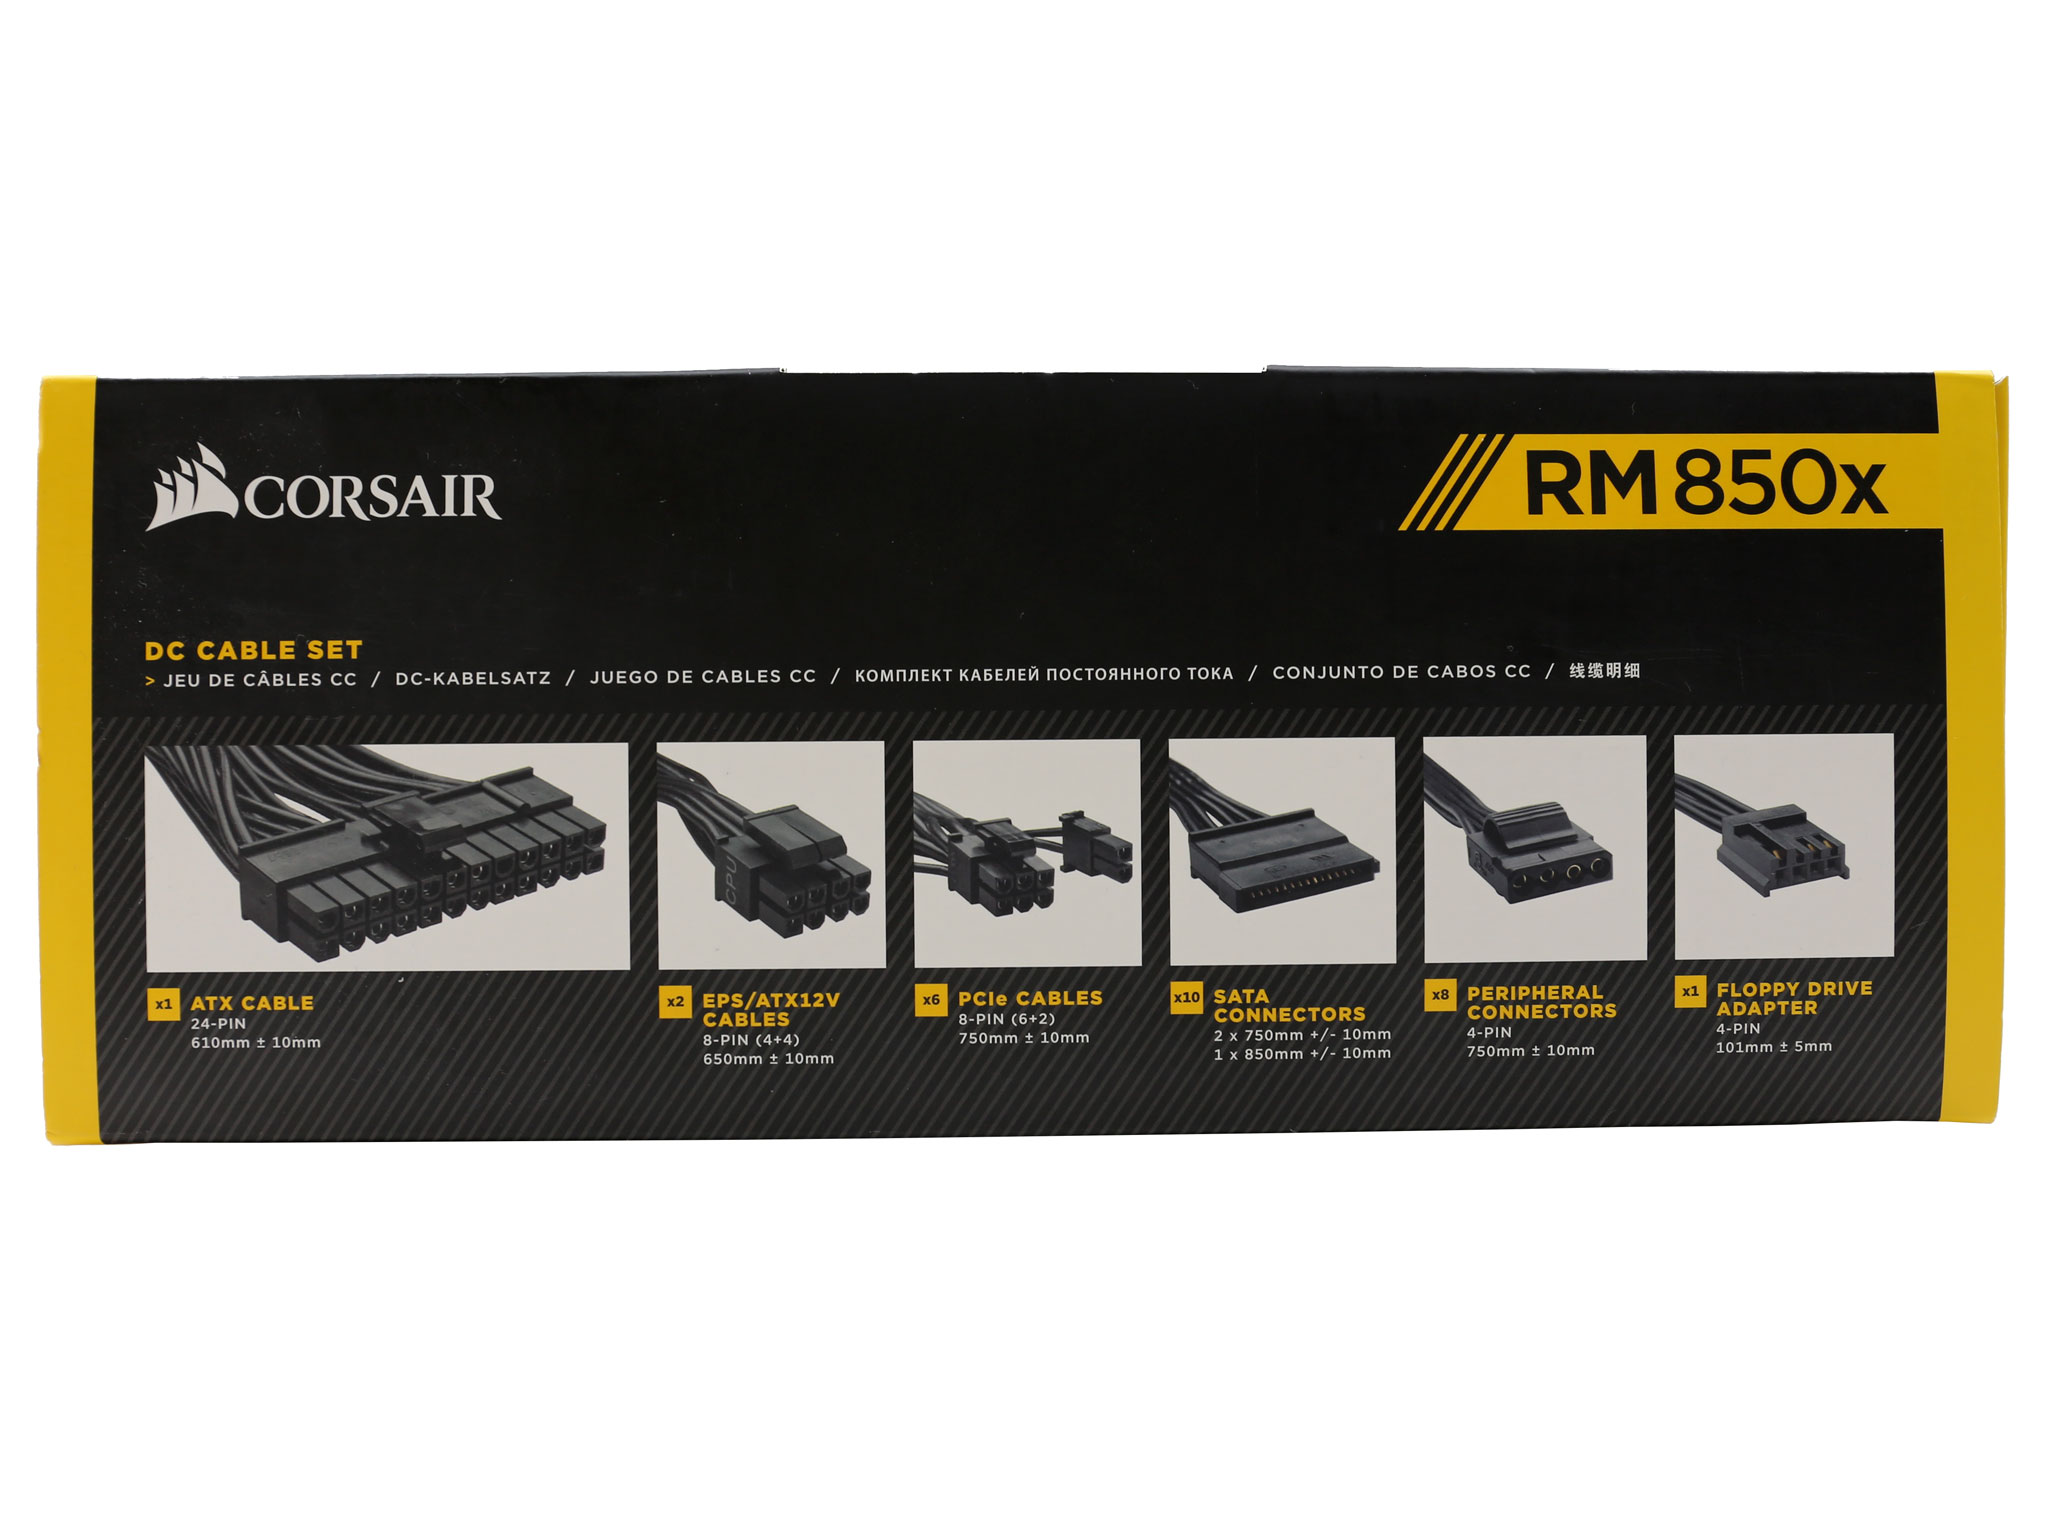 Corsair RM850x (2018) PSU Review | KitGuru- Part 2